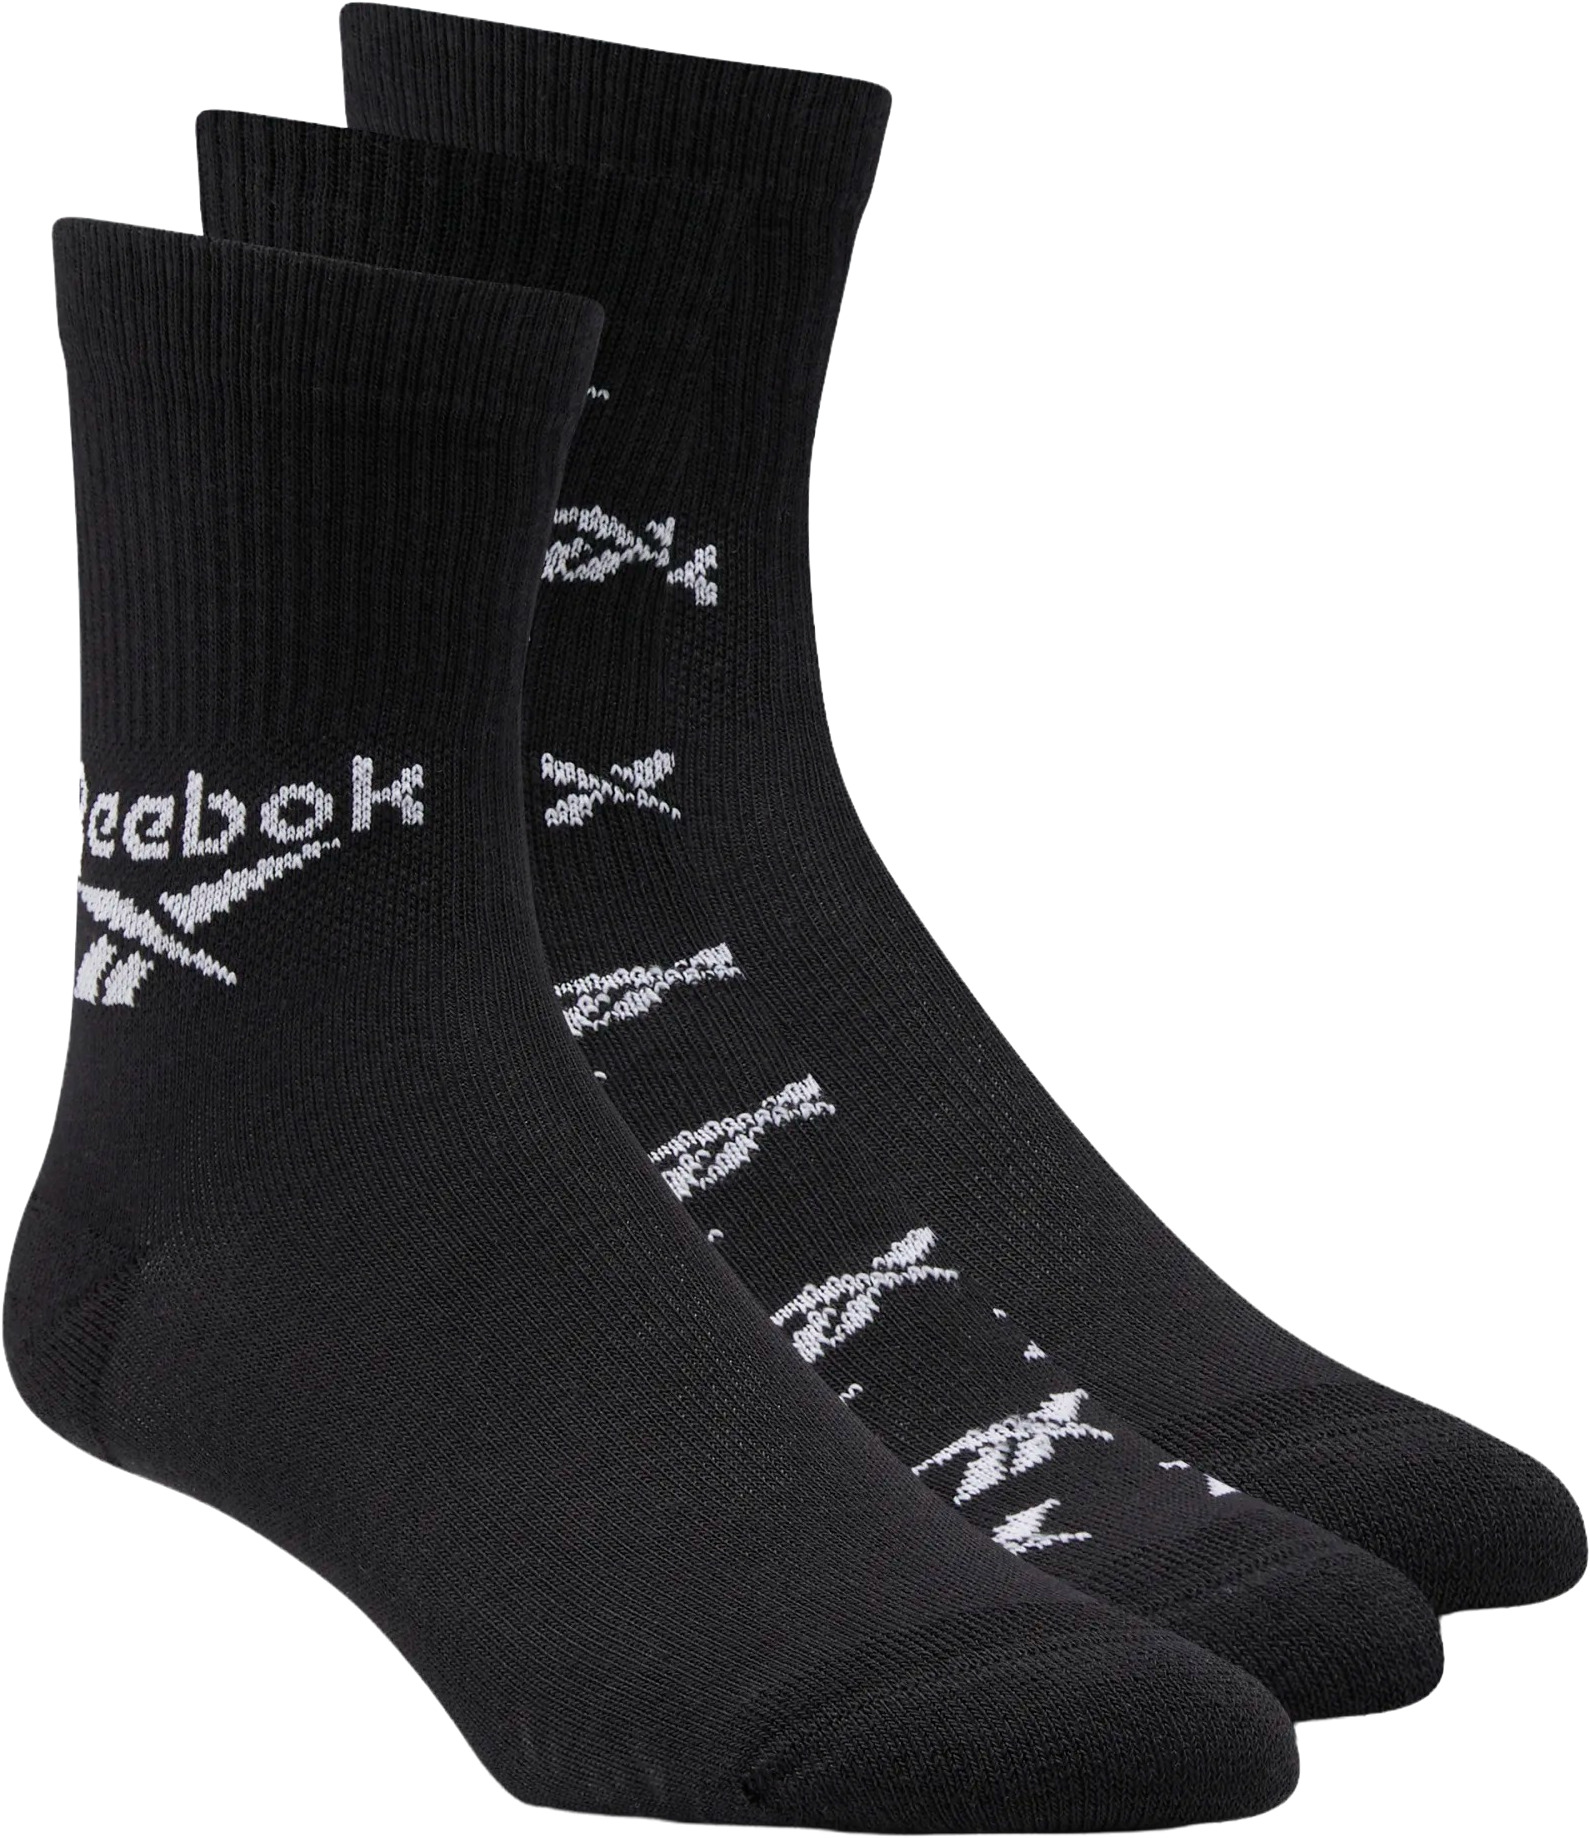 Комплект носков Reebok Classic Fo Crew Sock 3P 37-39 черный, GG6683, хлопок  - купить